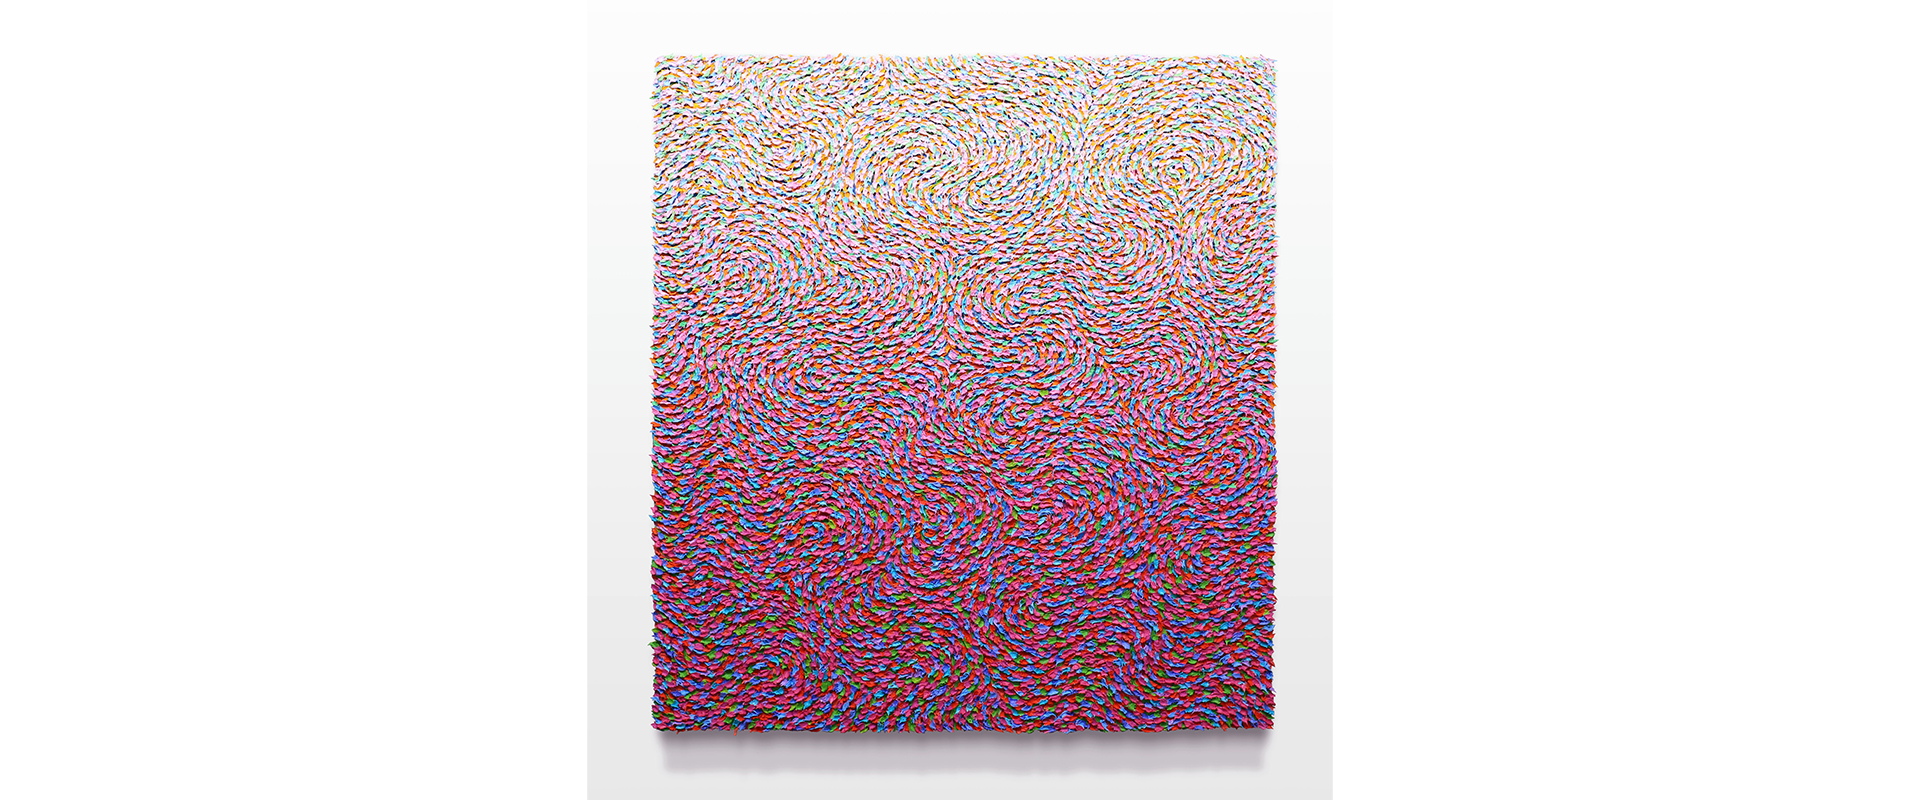 Robert Sagerman, “19,728” - 2021, Öl auf Leinwand, 99 x 89 cm